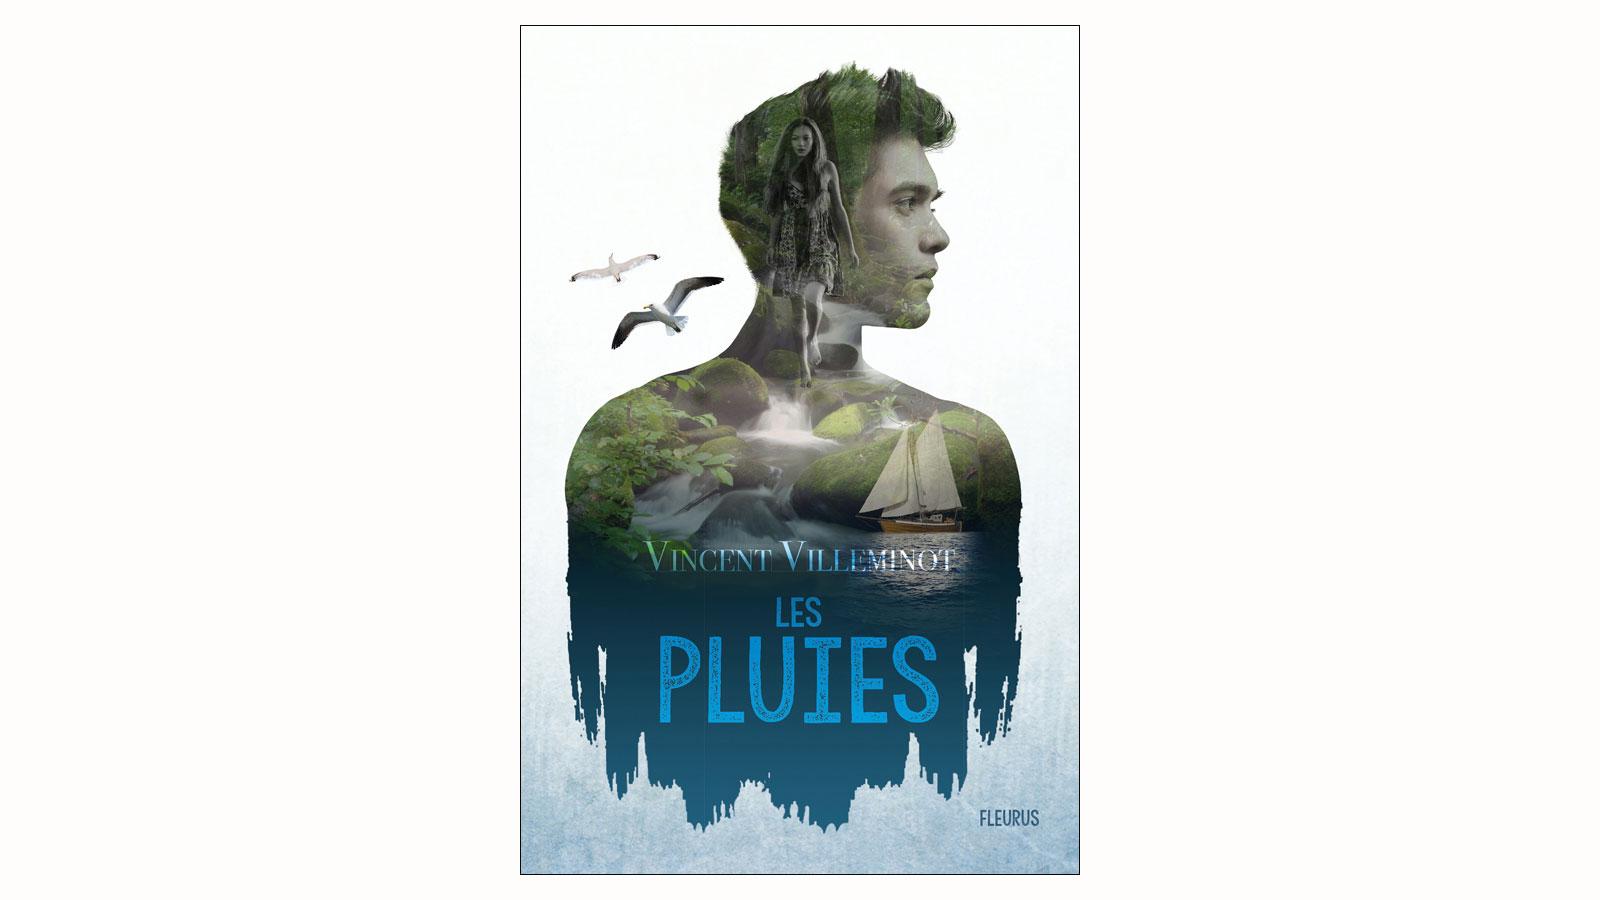 La couverture de Les Pluies, de Vincent Villeminot, paru aux éditions Fleurus.Editions Fleurus [Editions Fleurus]